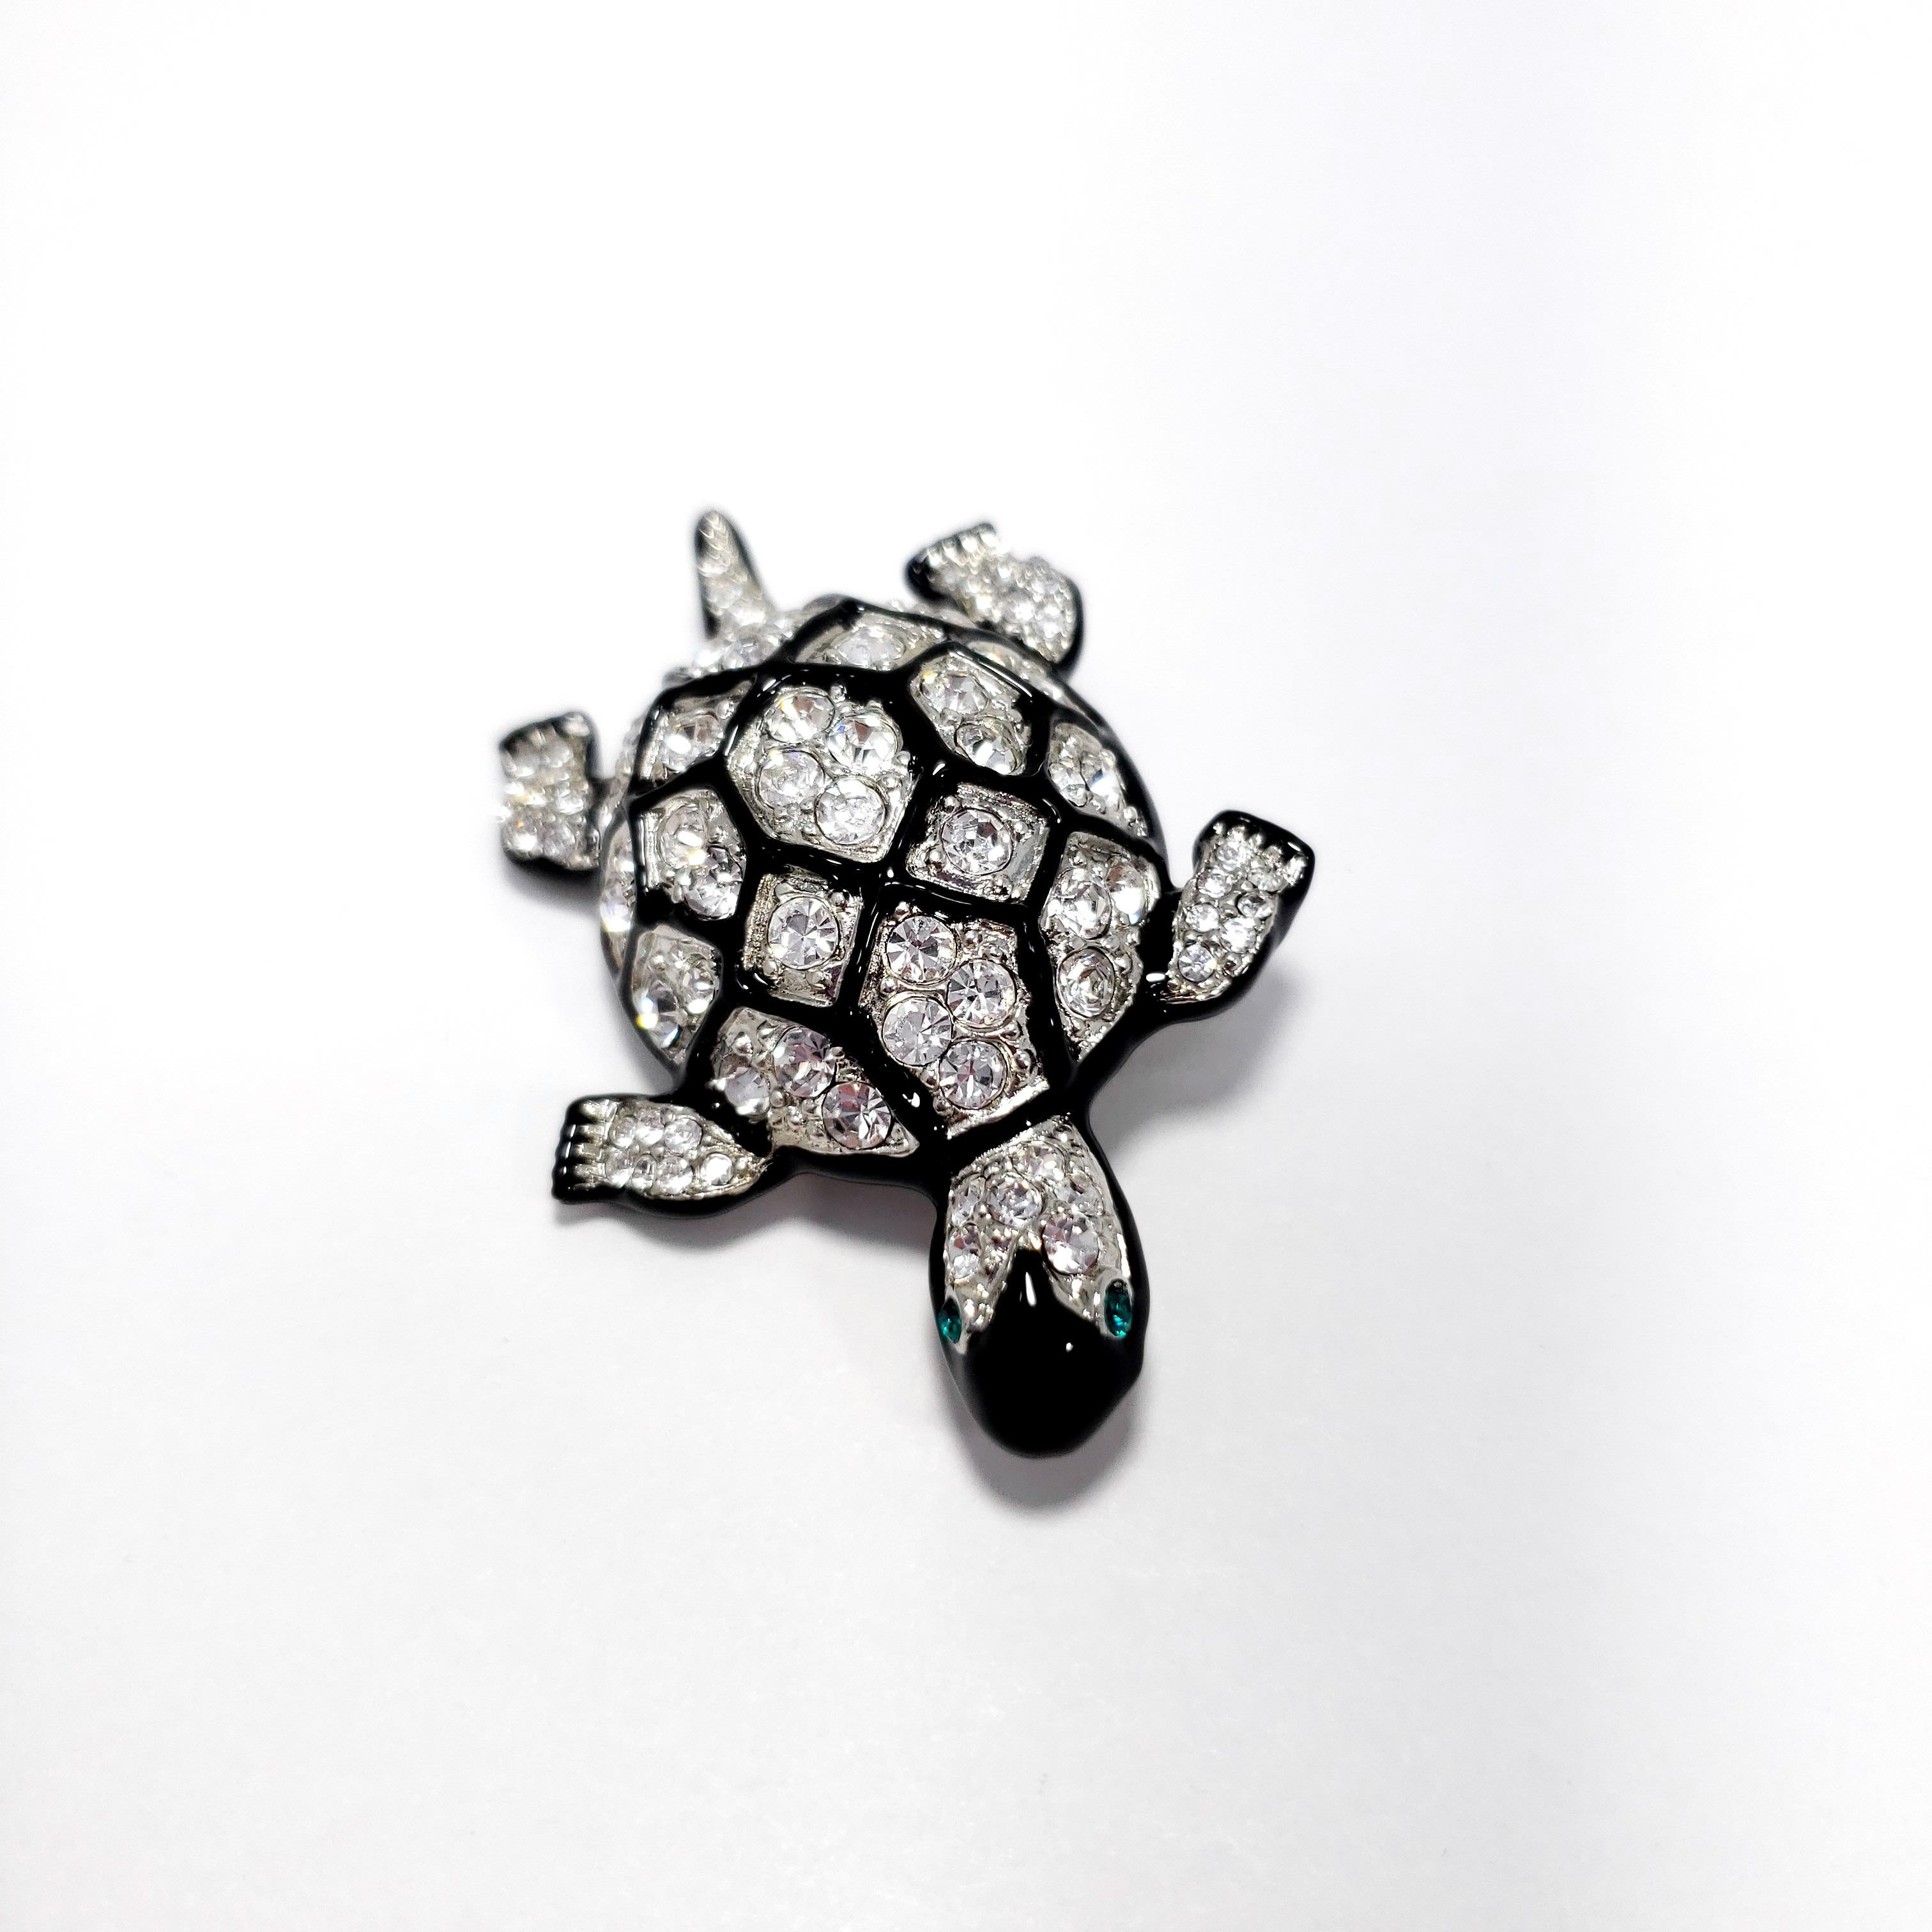 Eine Brosche von Kenneth Jay Lane. Diese funkelnde Schildkröte ist mit klaren Pave-Kristallen besetzt, die mit schwarzen Emaille-Konturen auf dem Panzer akzentuiert sind.

Punzierungen: Kenneth Lane, Hergestellt in den USA